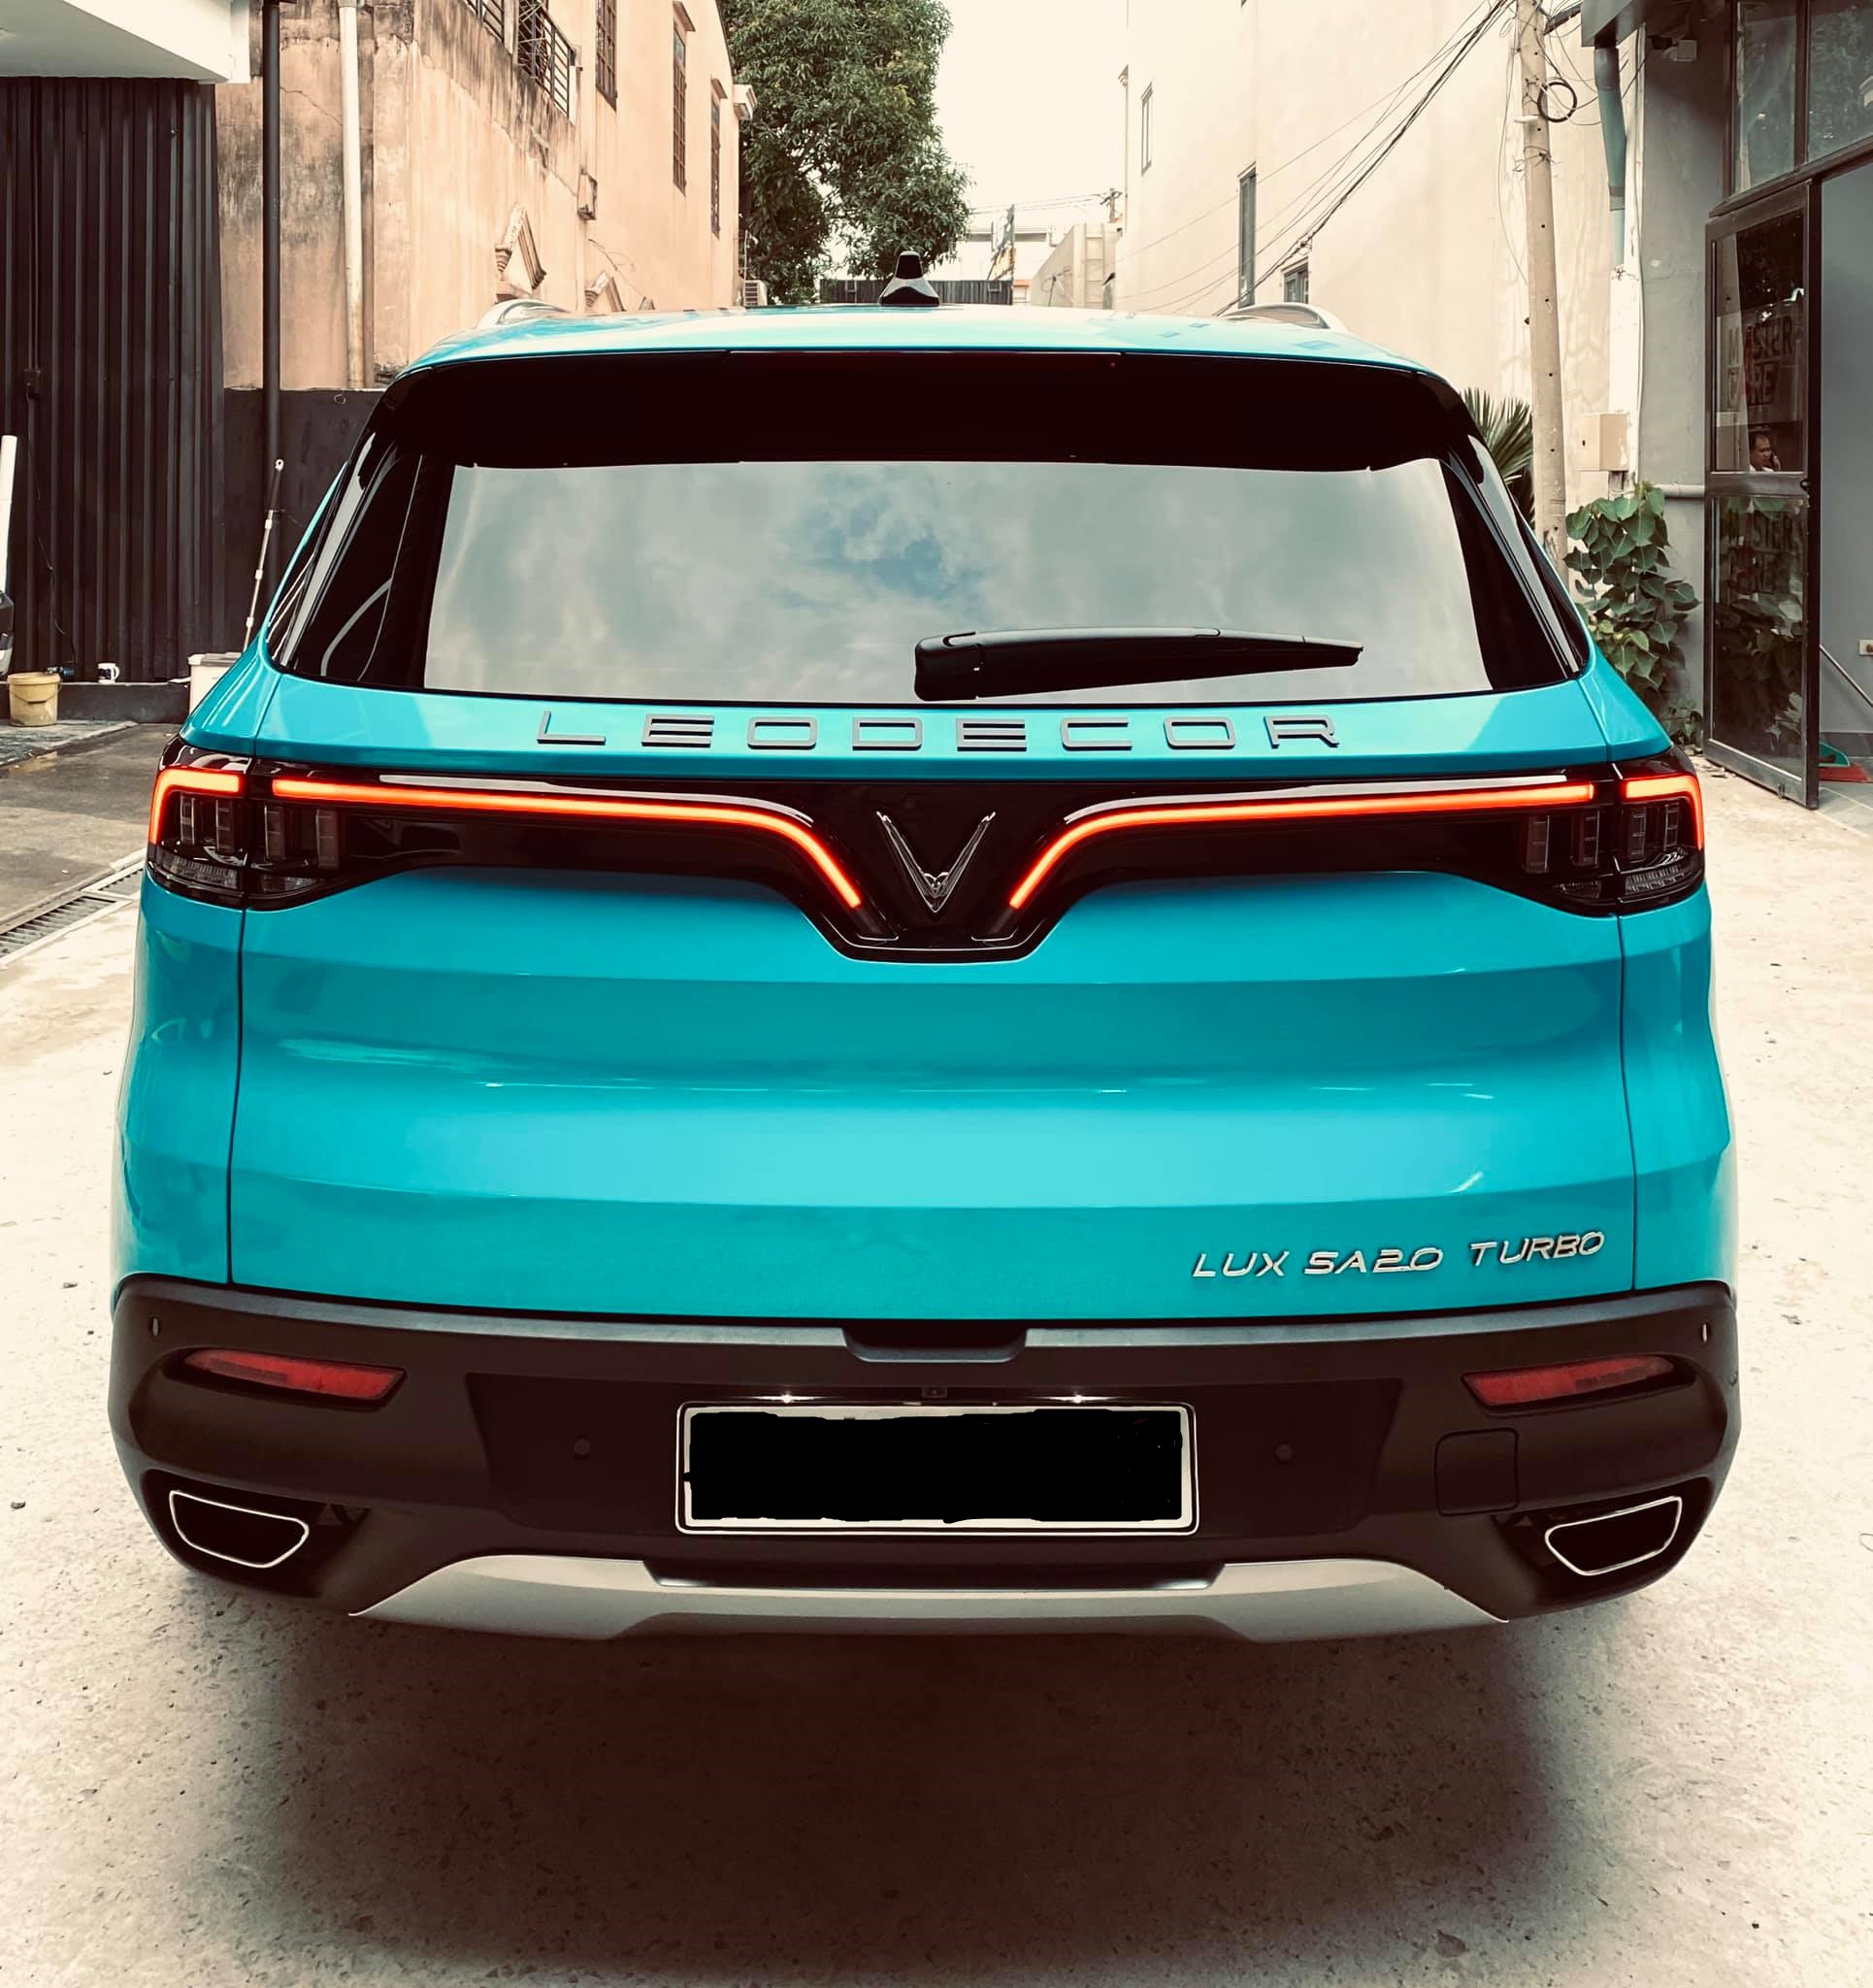 Bắt trend đổi màu xe, VinFast LUX SA2.0 thay bộ cánh màu xanh cực chất tại Sài Gòn